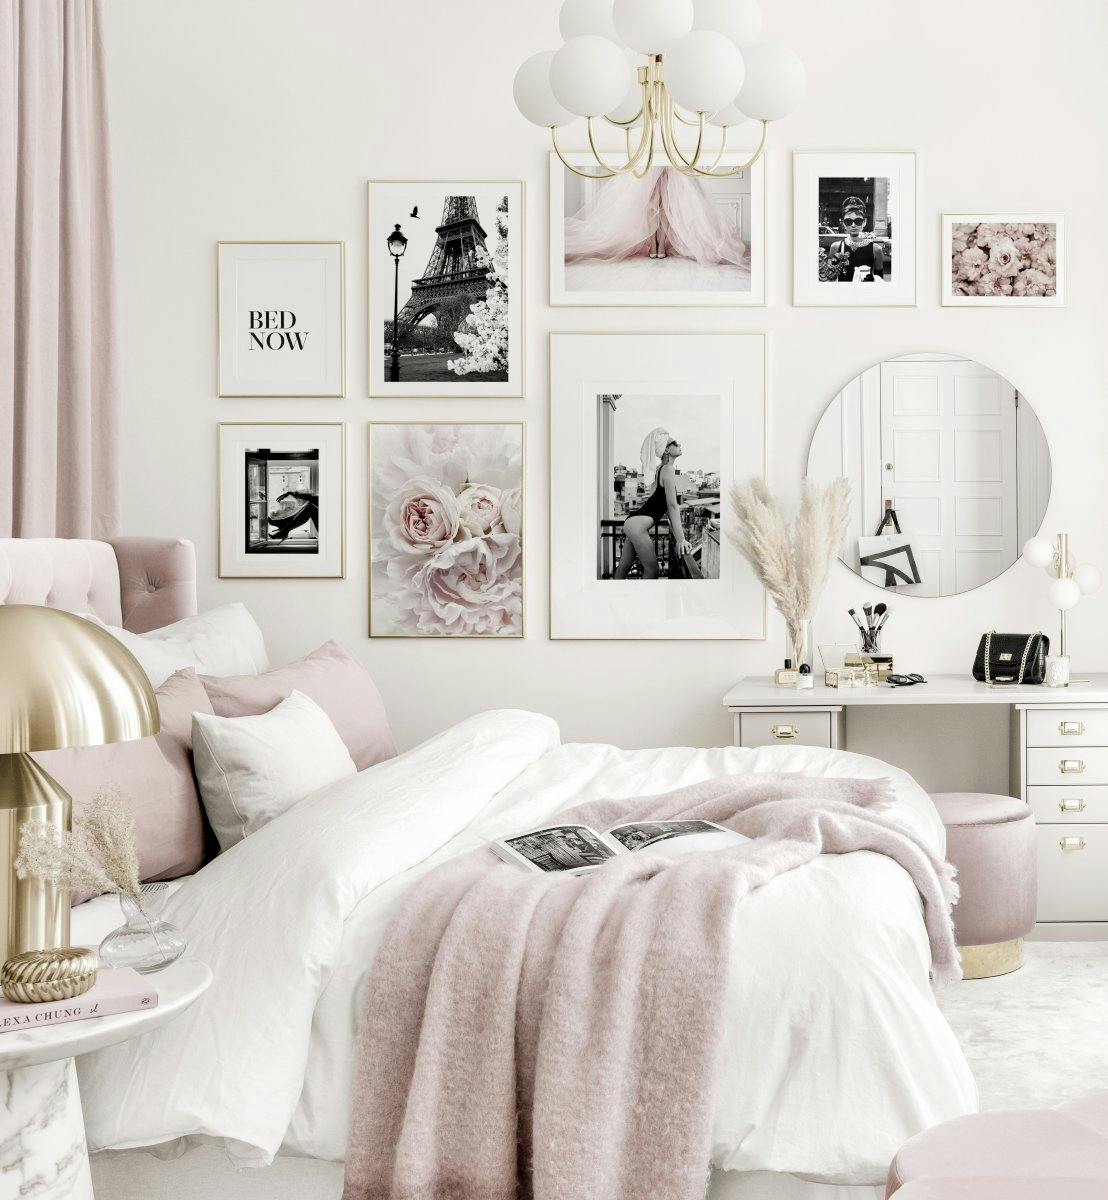 Mural de cuadros elegante dormitorio blanco y rosa posters blanco y negro marcos dorados